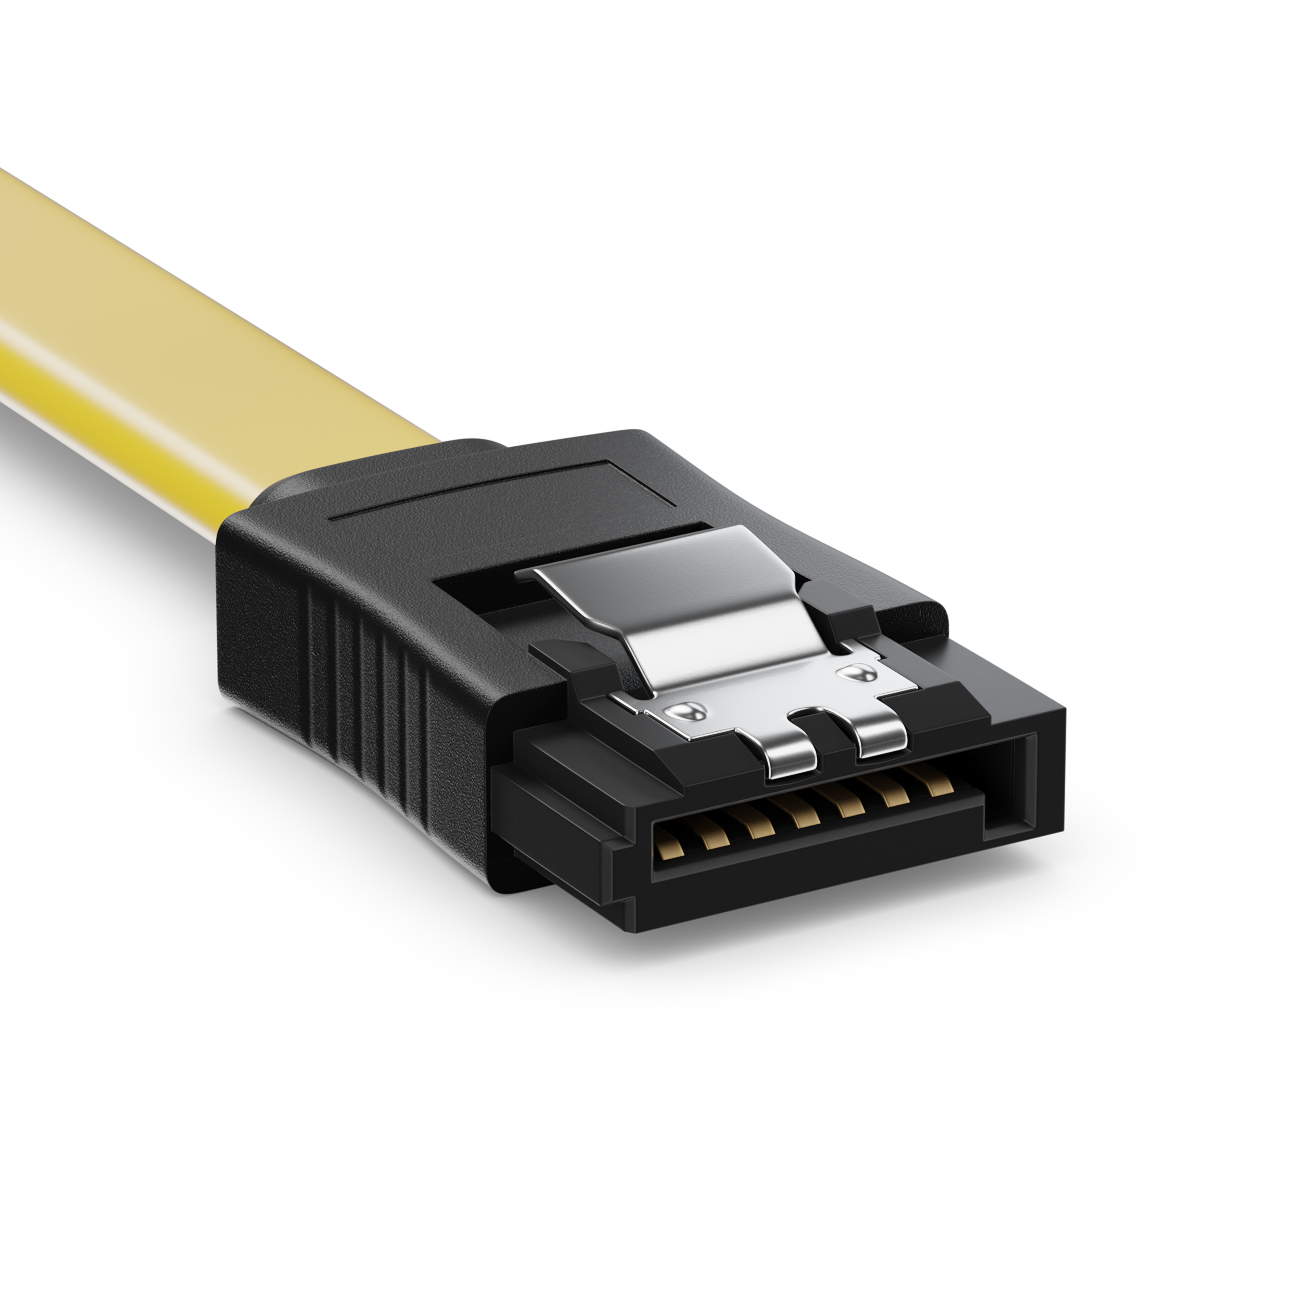 2X gerade zu gerade 4 Stück Farbe: Gelb deleyCON SATA Kabel 50cm S-ATA 3 HDD SSD Datenkabel 6 GBit/s 2X 90° zu gerade